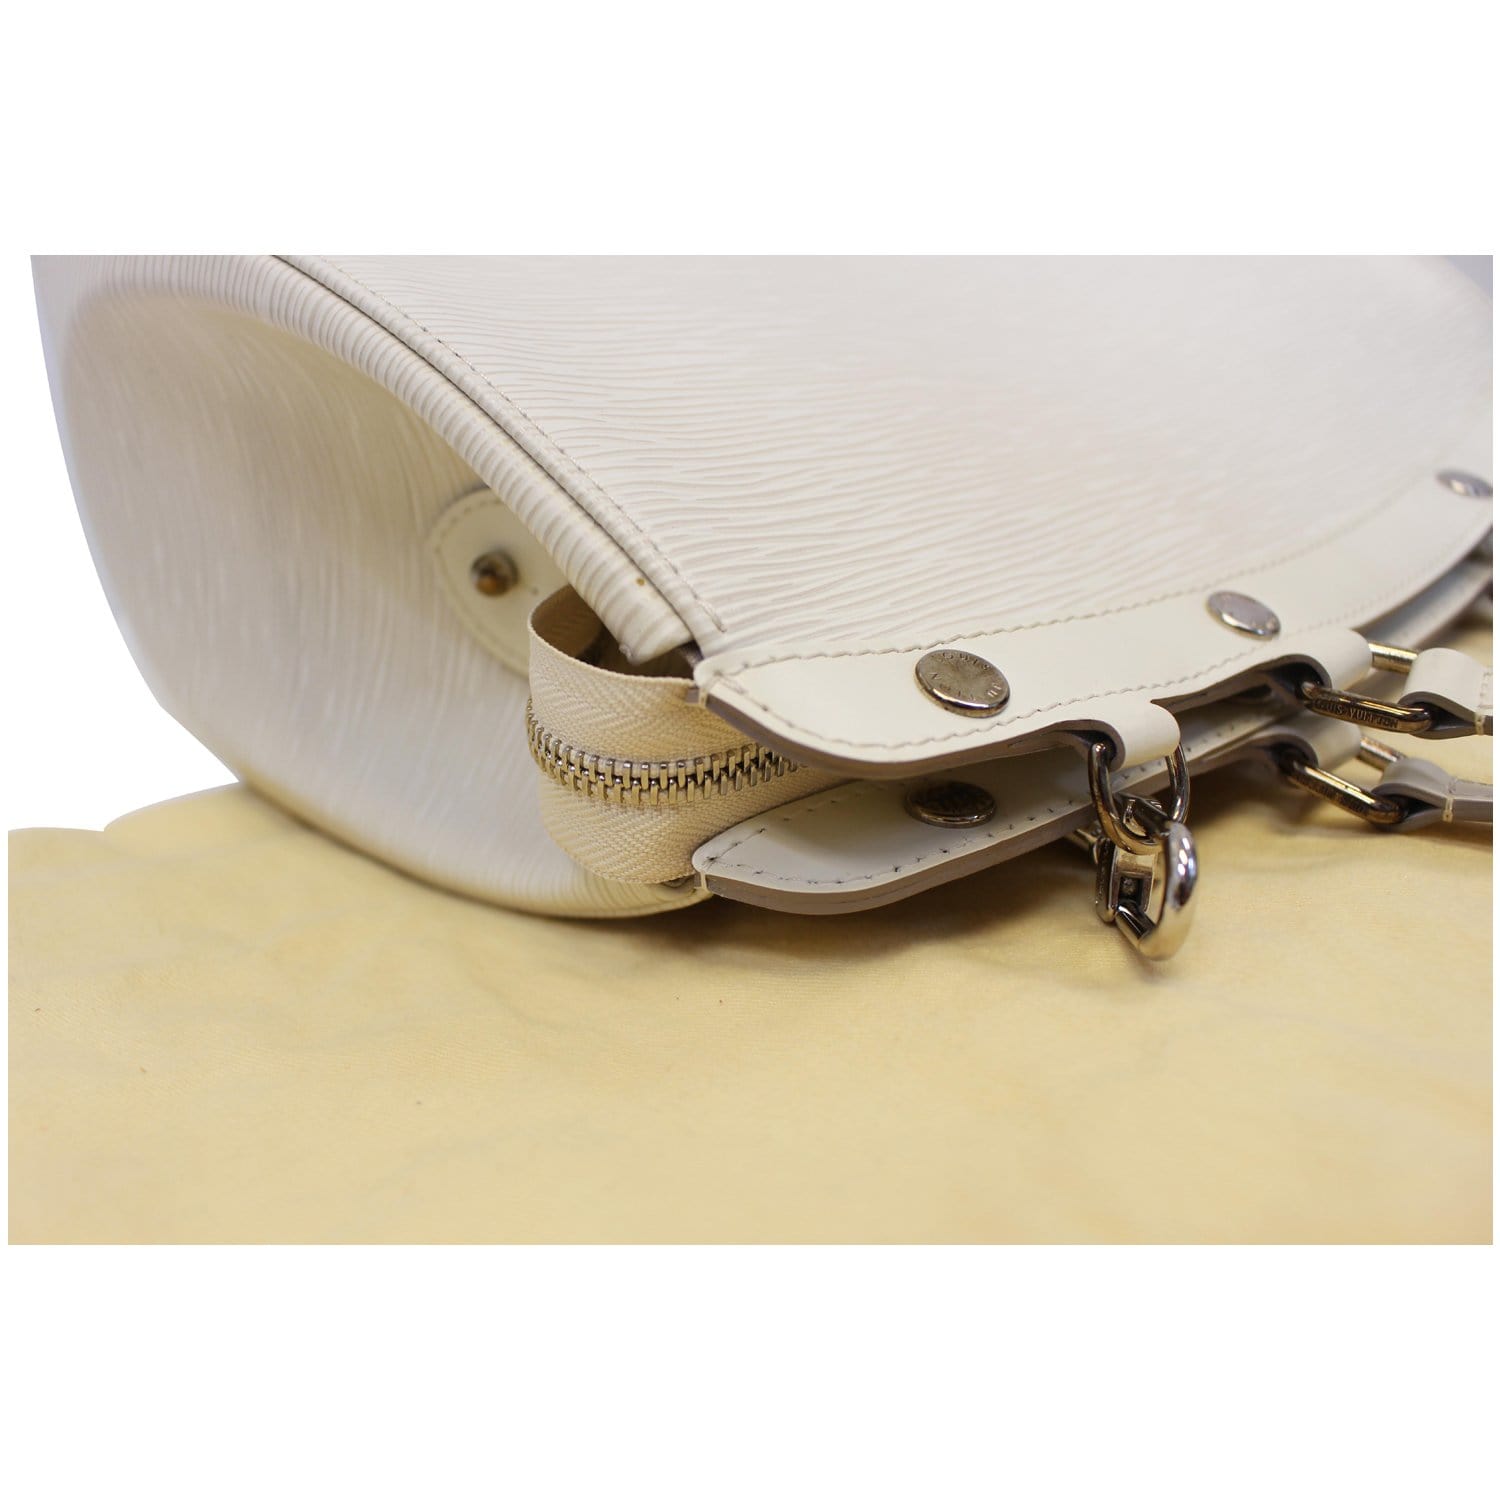 Louis Vuitton Alma Ivory Epi Leather MM White - Bags